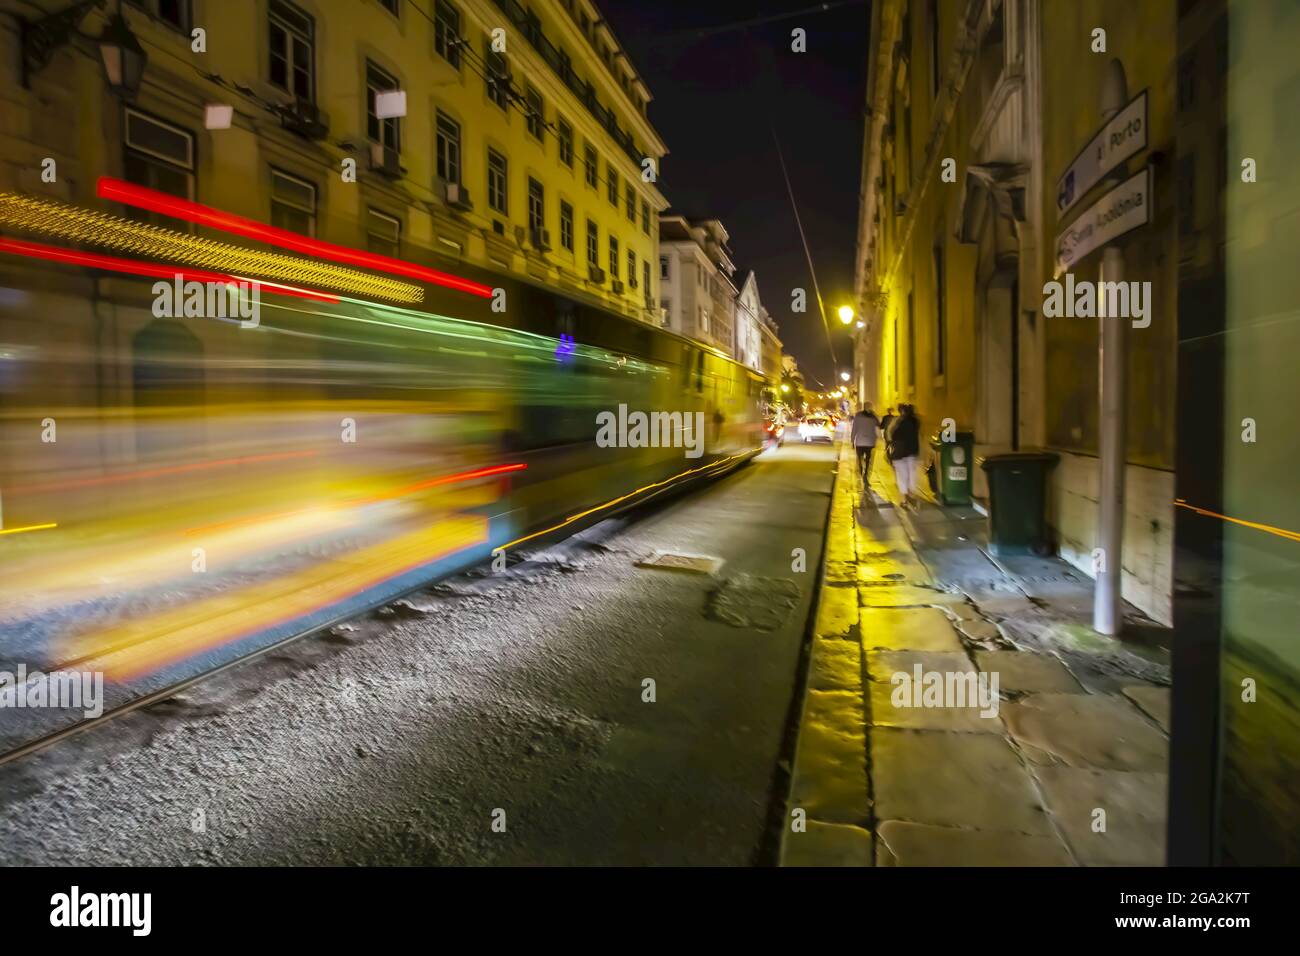 Verschwommene Straßenbahn, die nachts durch die kopfsteingepflasterten Straßen der historischen Stadt Lissabon fährt; Lissabon, Lissabon, Portugal Stockfoto